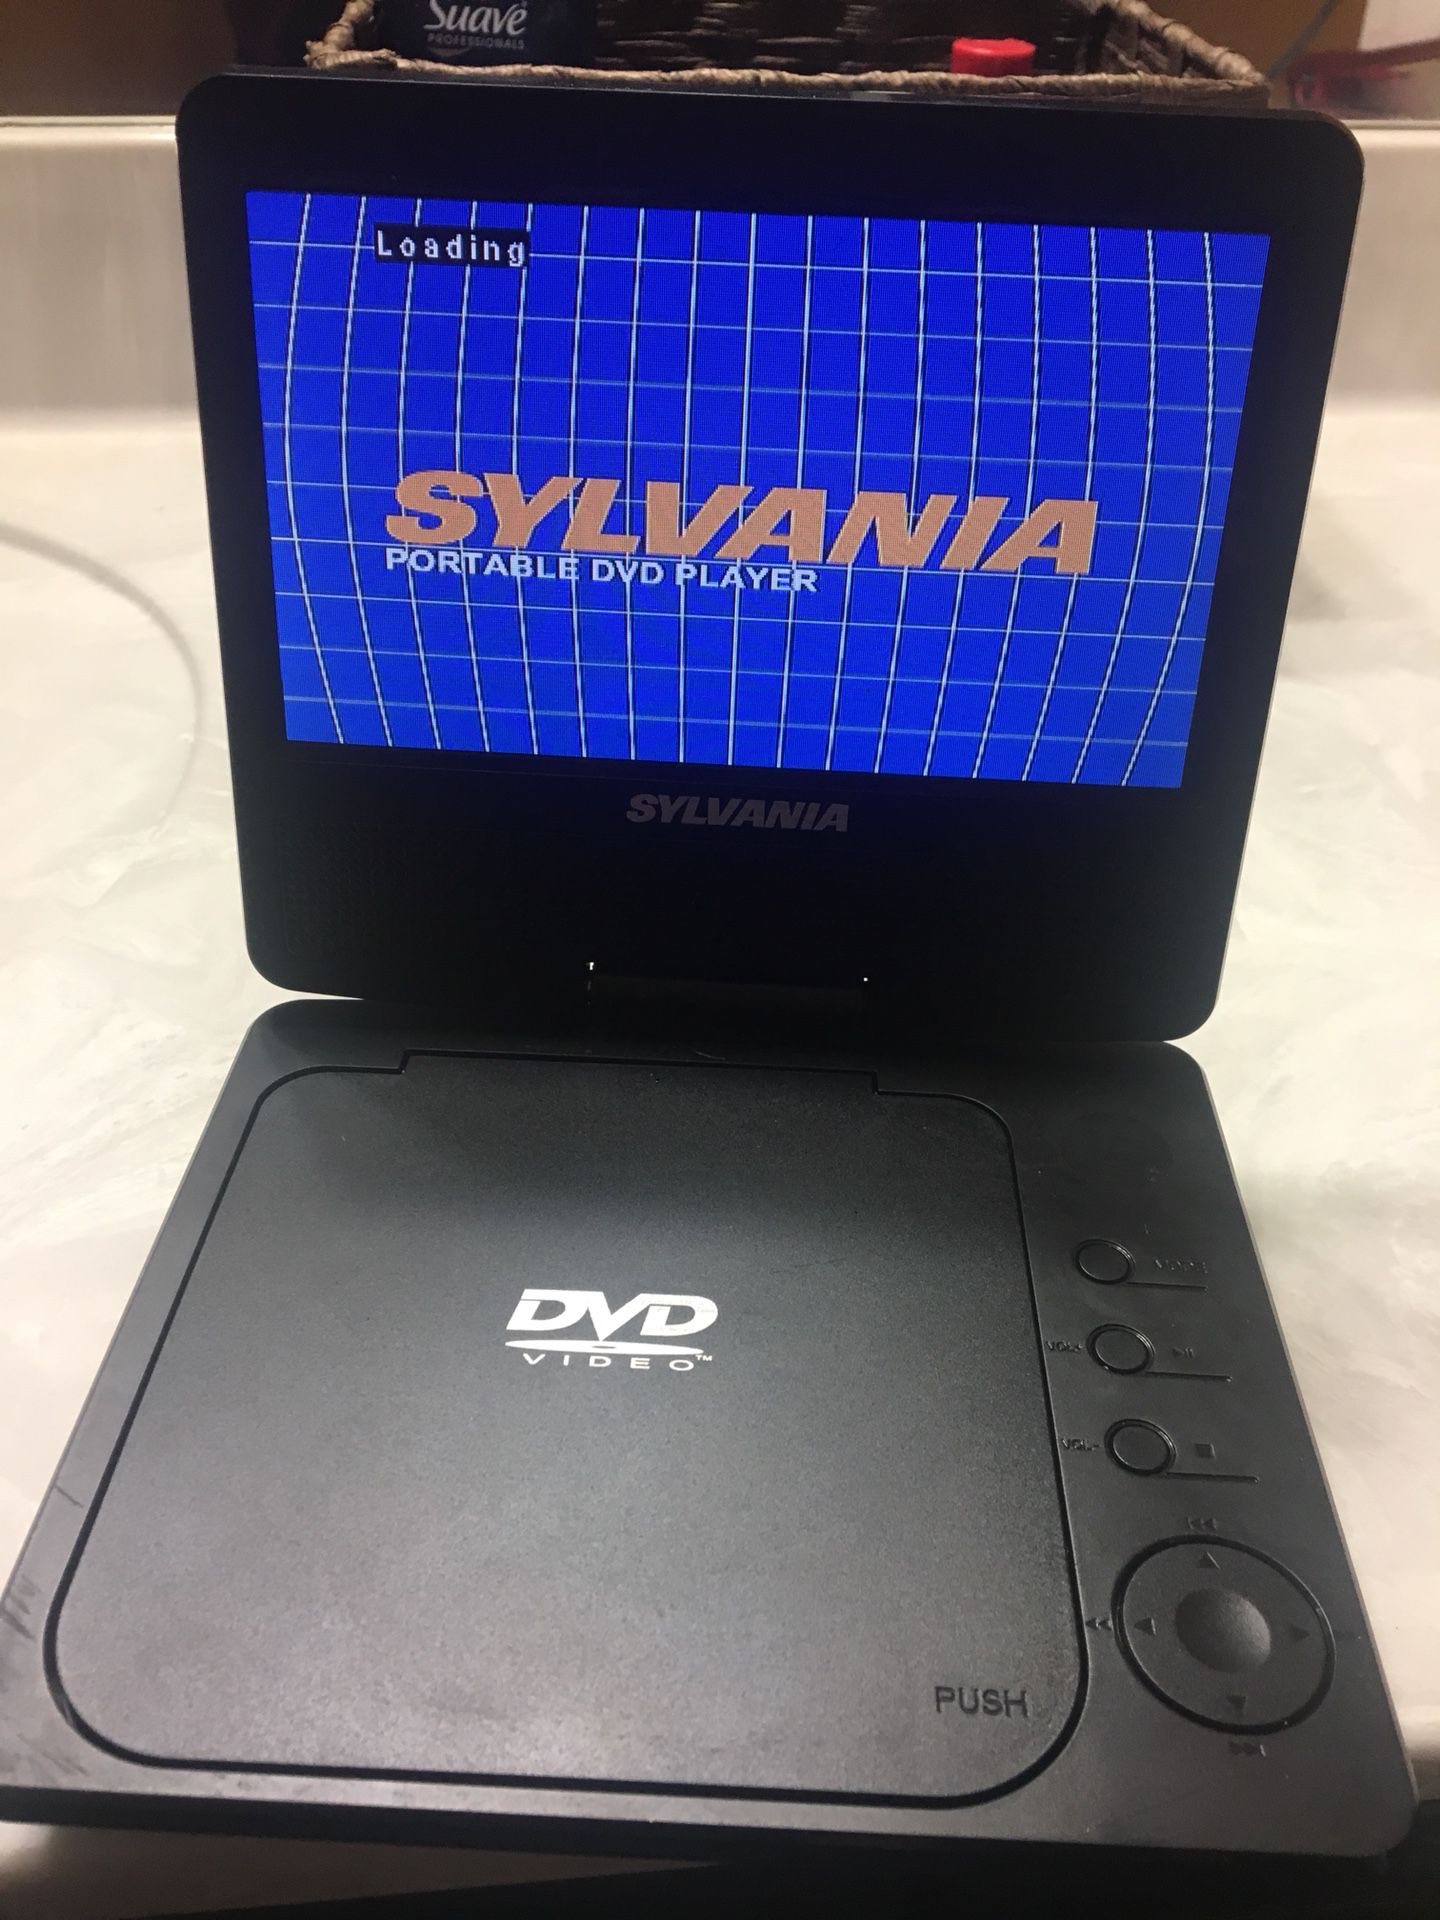 Sylvania portable DVD player